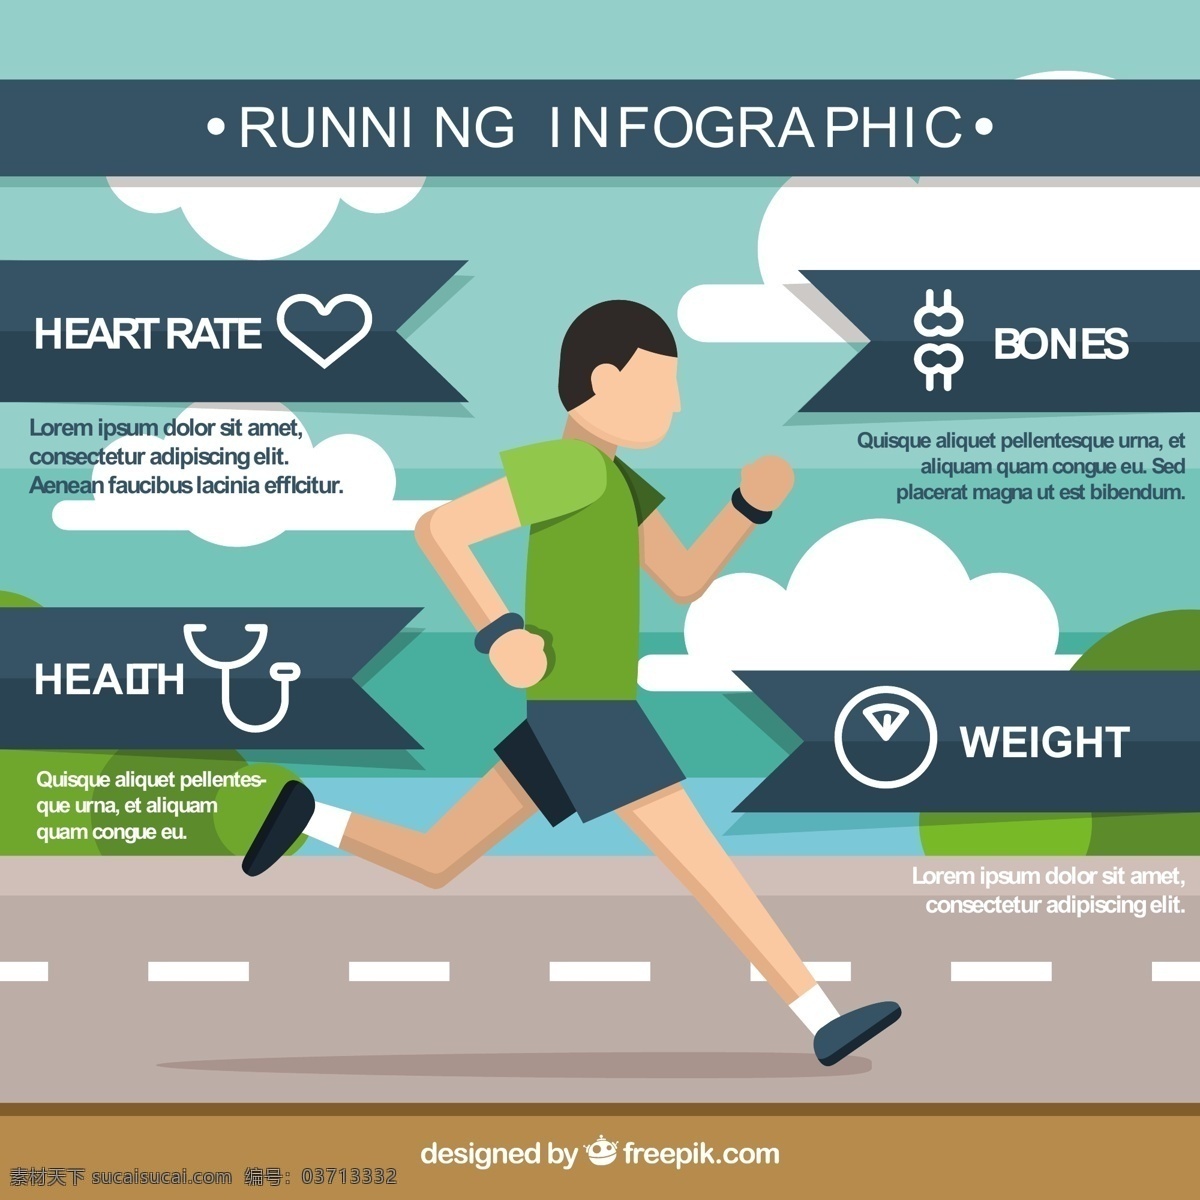 男孩 平面设计 运行 图表 模板 运动 健身 健康 图 体育 平跑 男孩跑 过程中 信息图表模板 数据 信息 健康信息